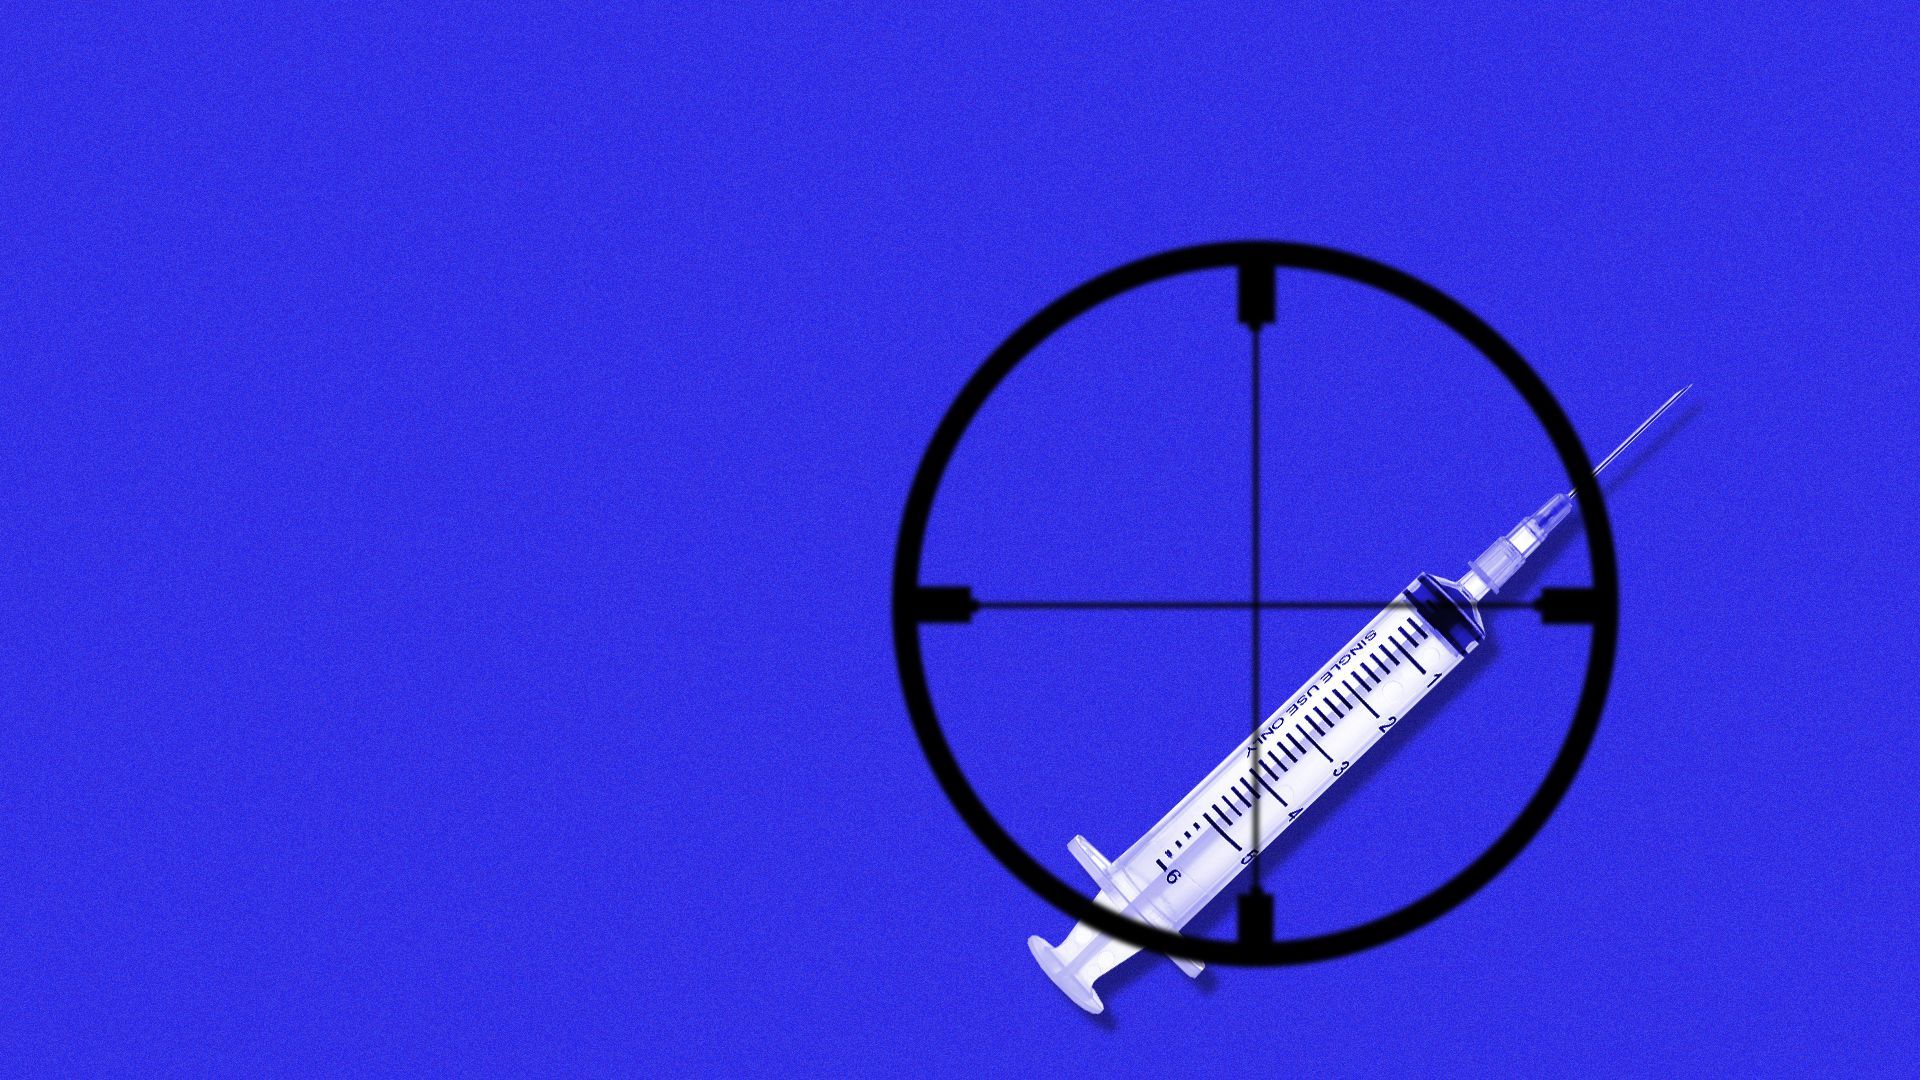 Illustration of crosshairs targeting a syringe